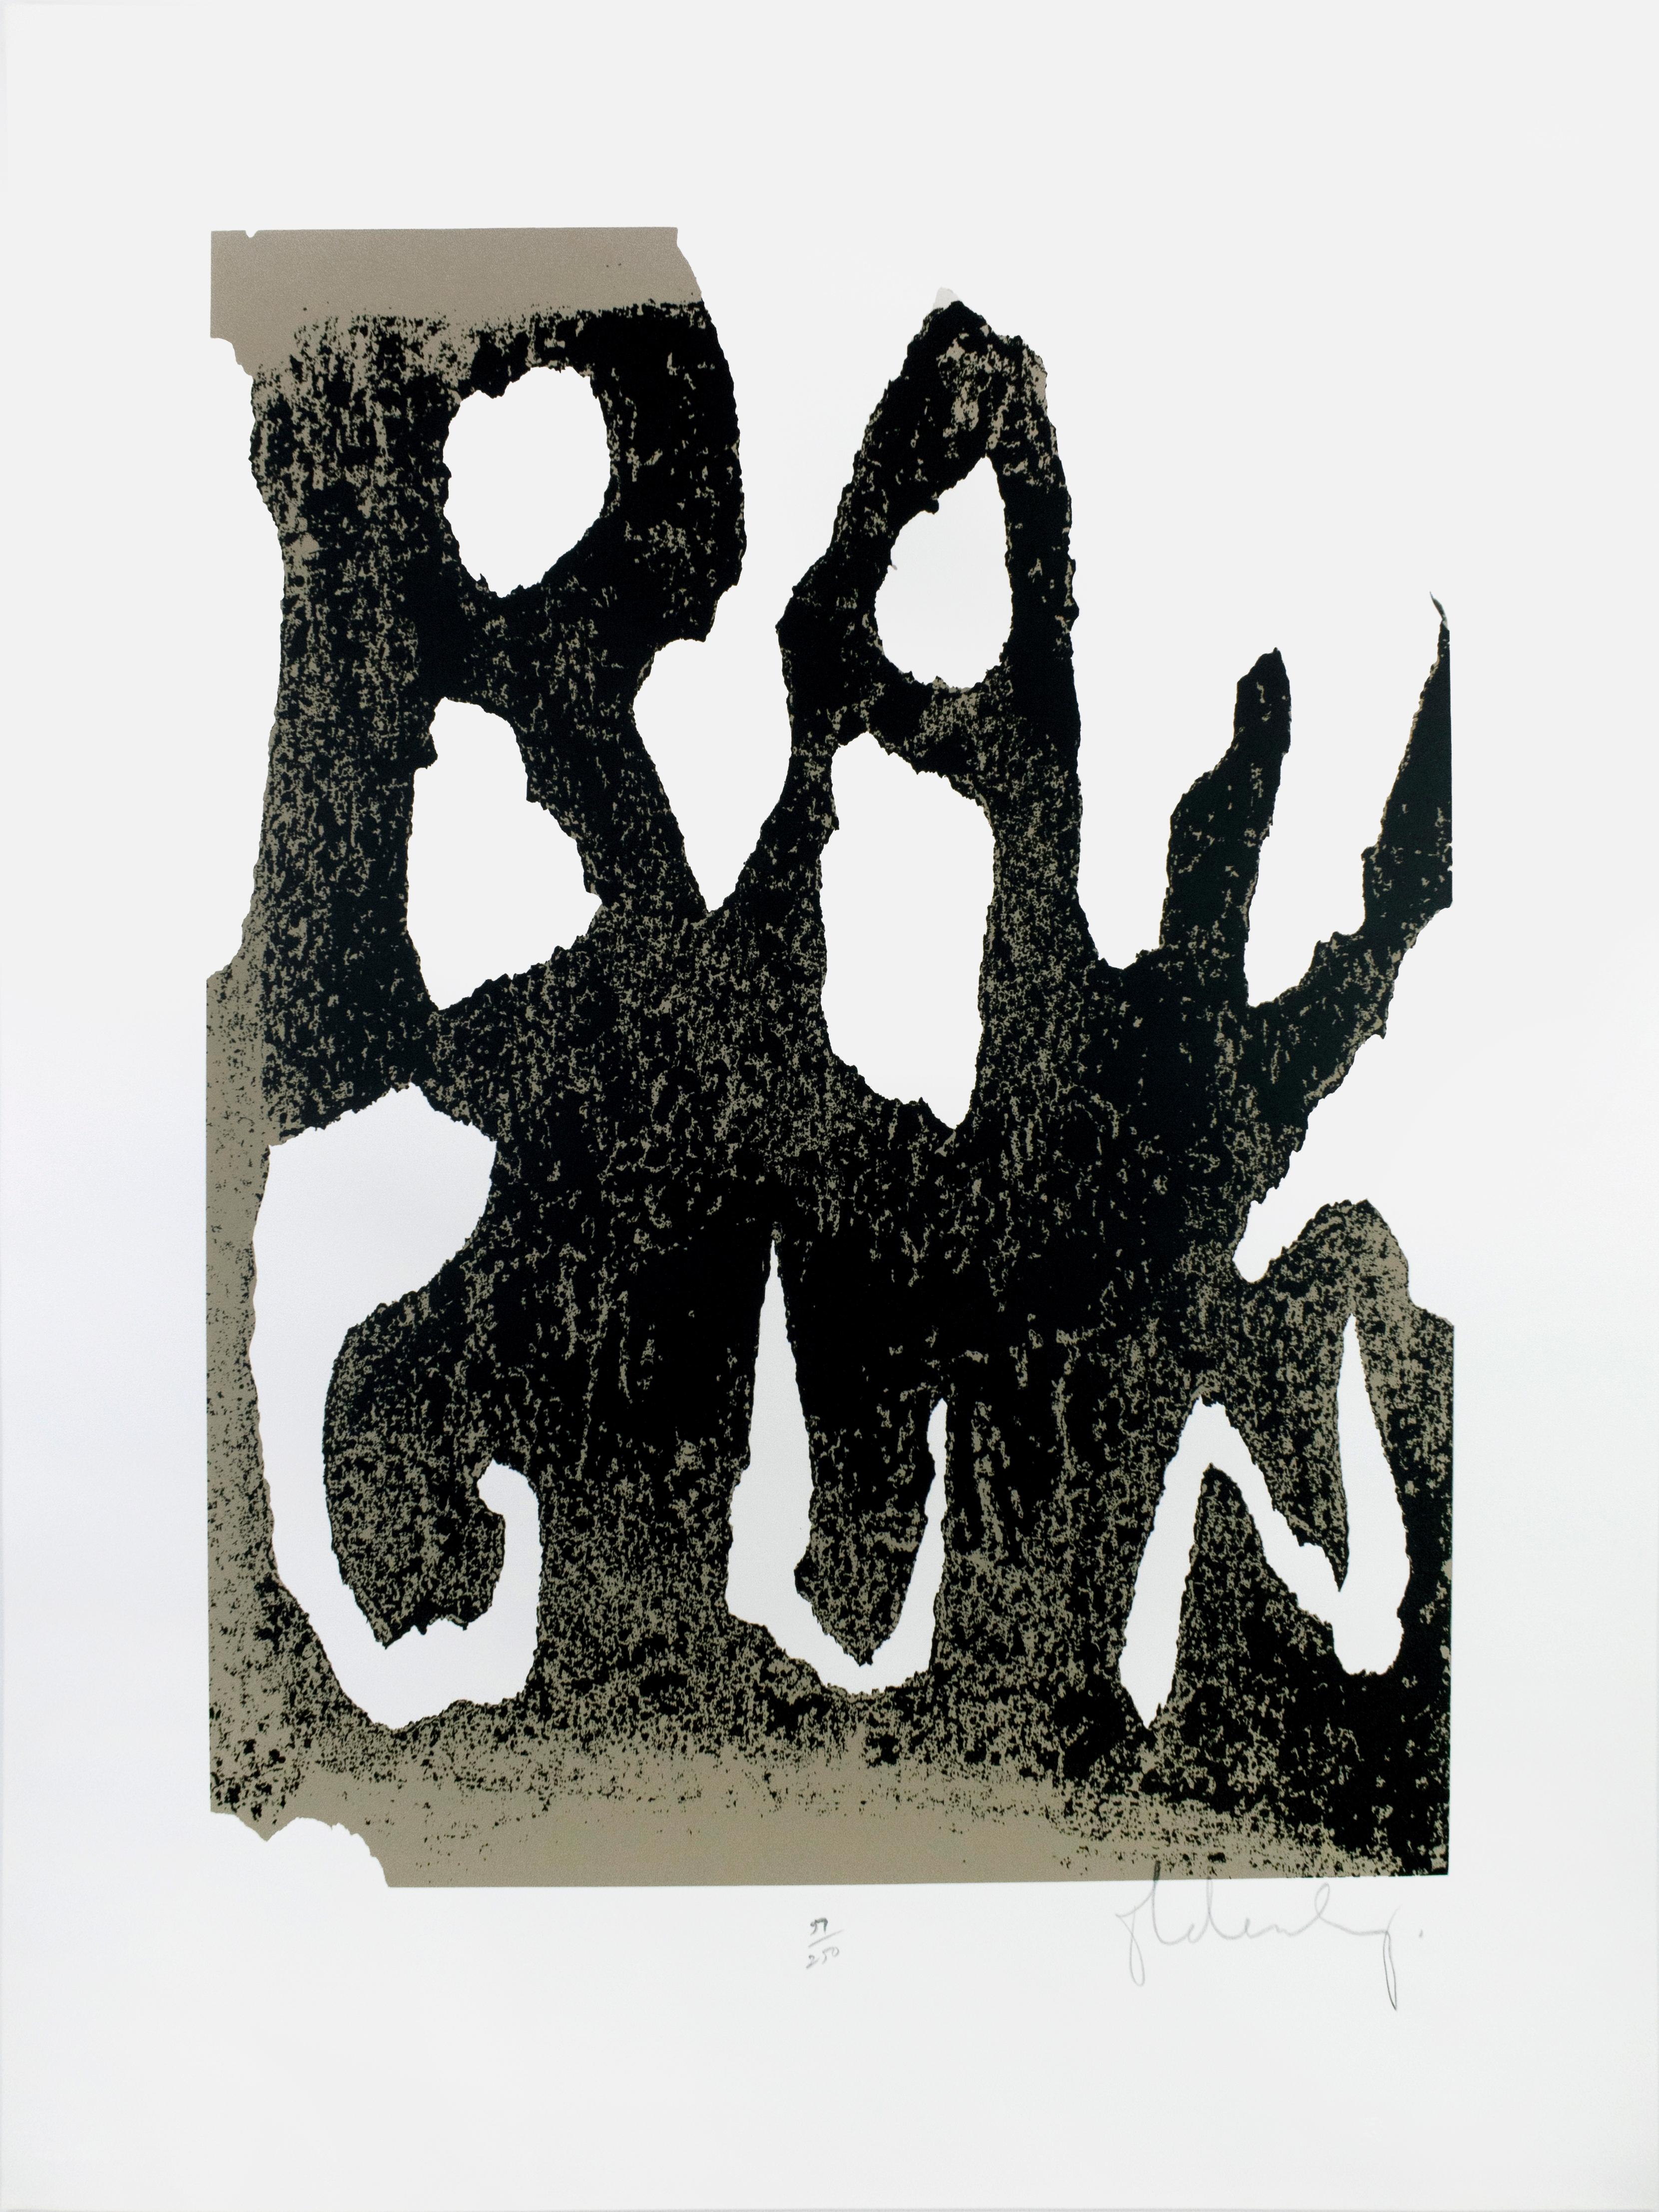 Ray gun est l'un des motifs les plus emblématiques d'Oldenburg et l'alter ego de l'artiste. Oldenburg a emprunté le nom d'une arme utilisée dans la série "Buck Rogers in the 25th Century A.D.", qu'il avait regardée dans son enfance. Cette impression